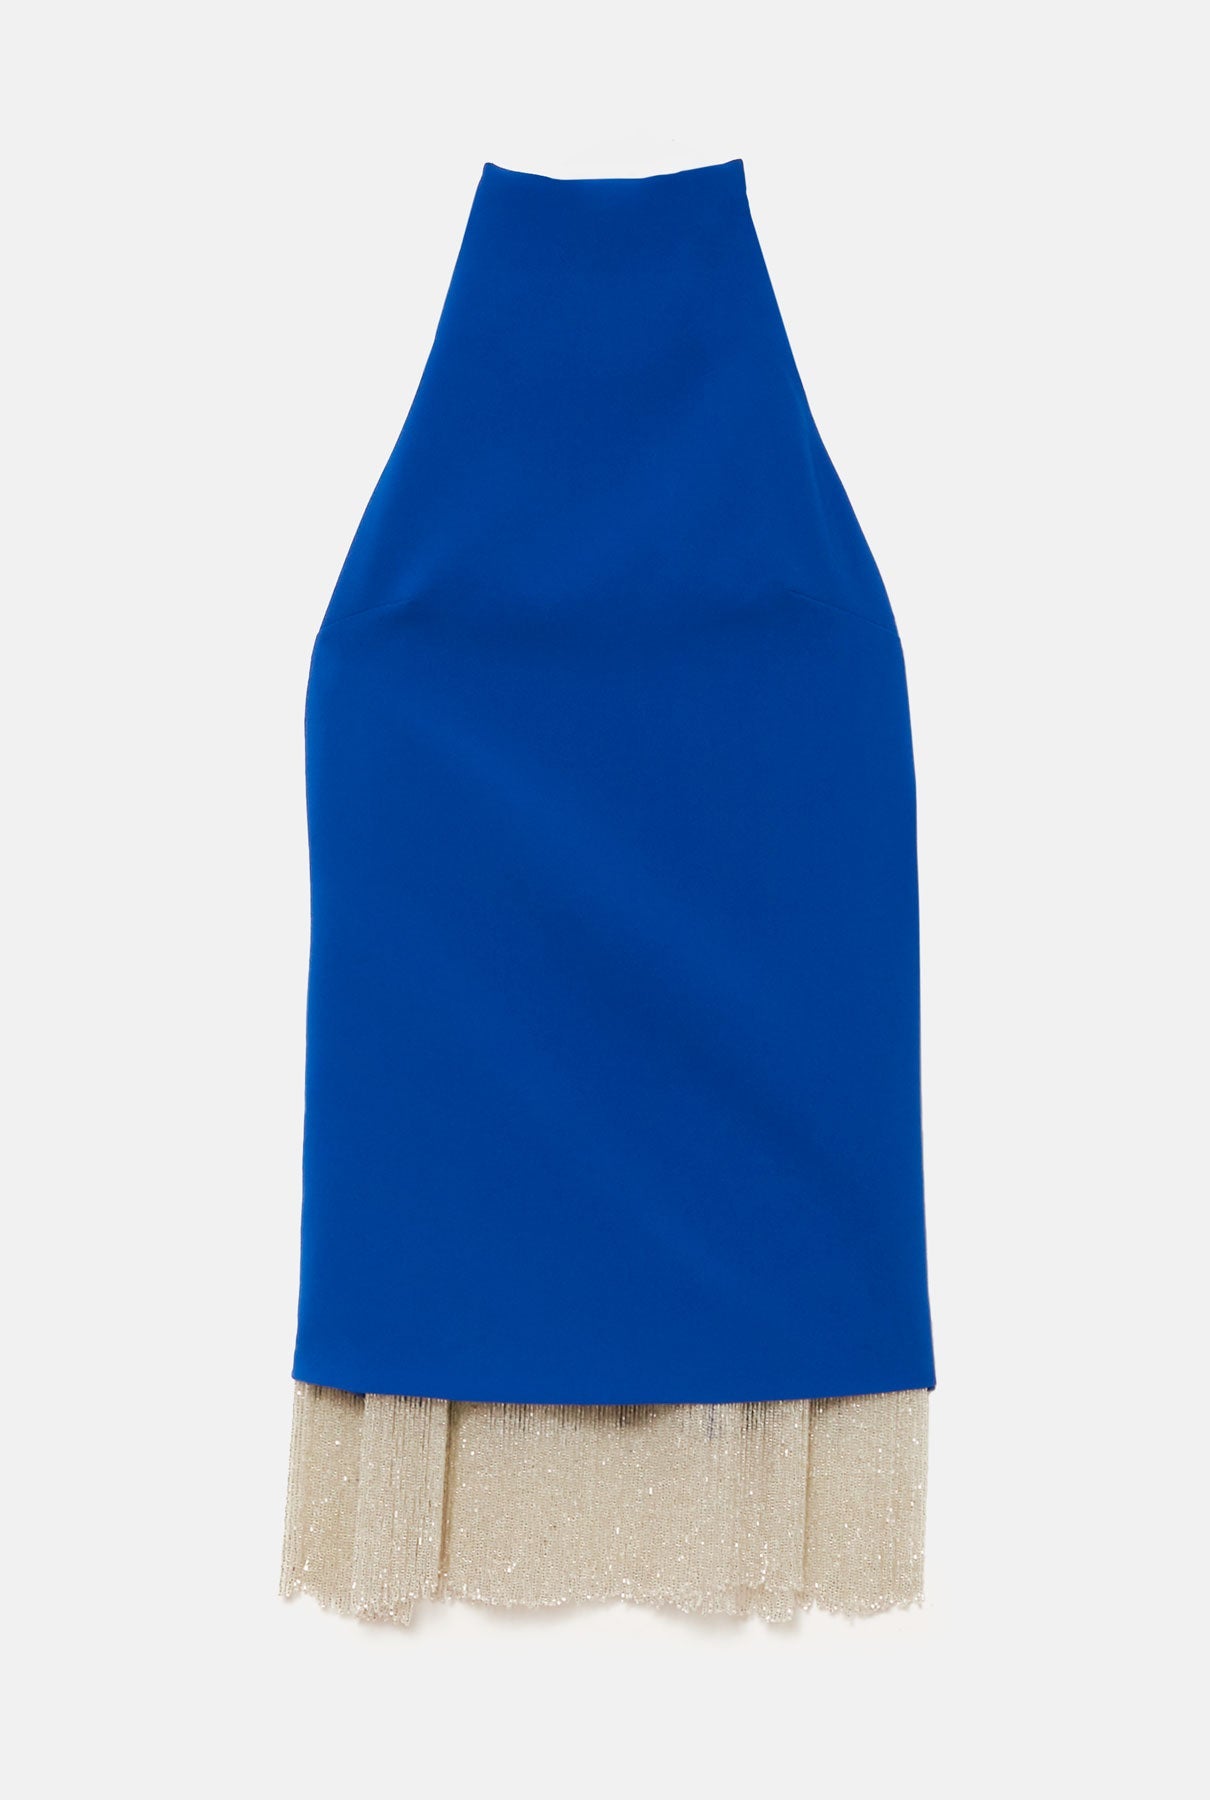 Daniella blue dress - Pre Order Dress Sophie et Voilà 